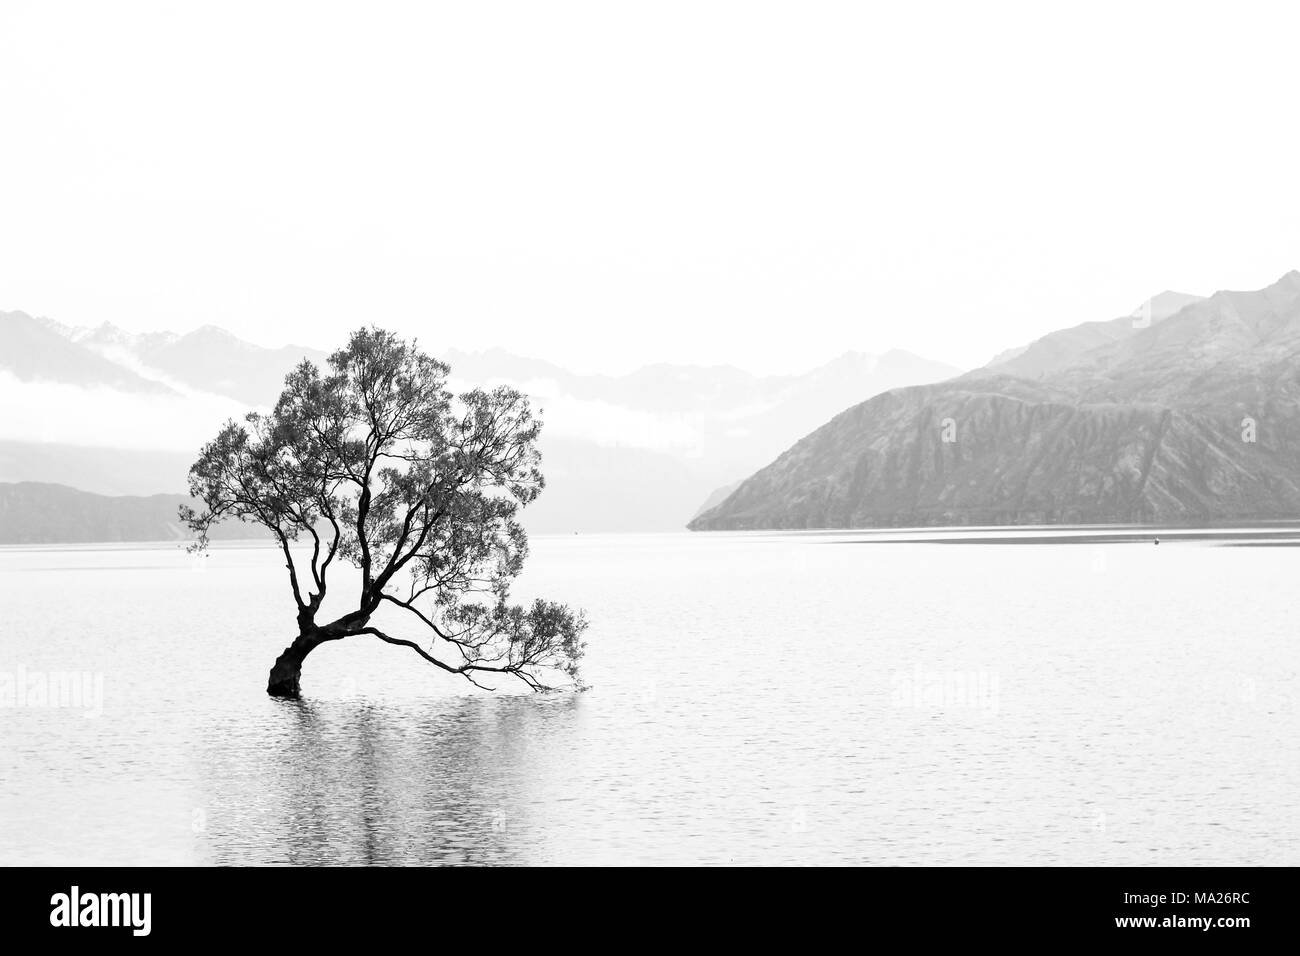 Arbre au milieu d'un lac en noir et blanc Banque D'Images